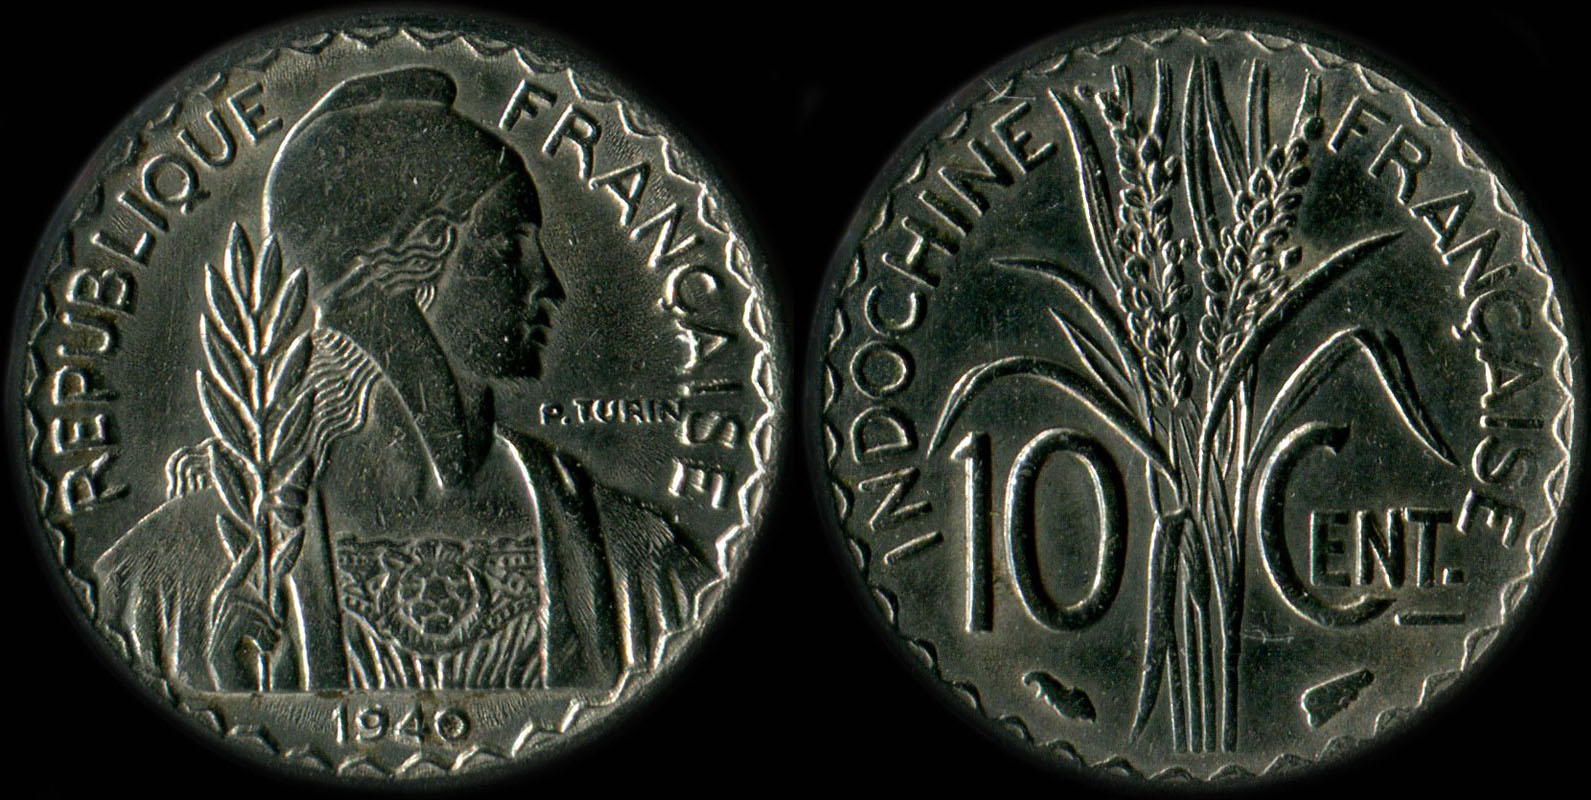 Pièce de 10 centièmes Indochine 1940